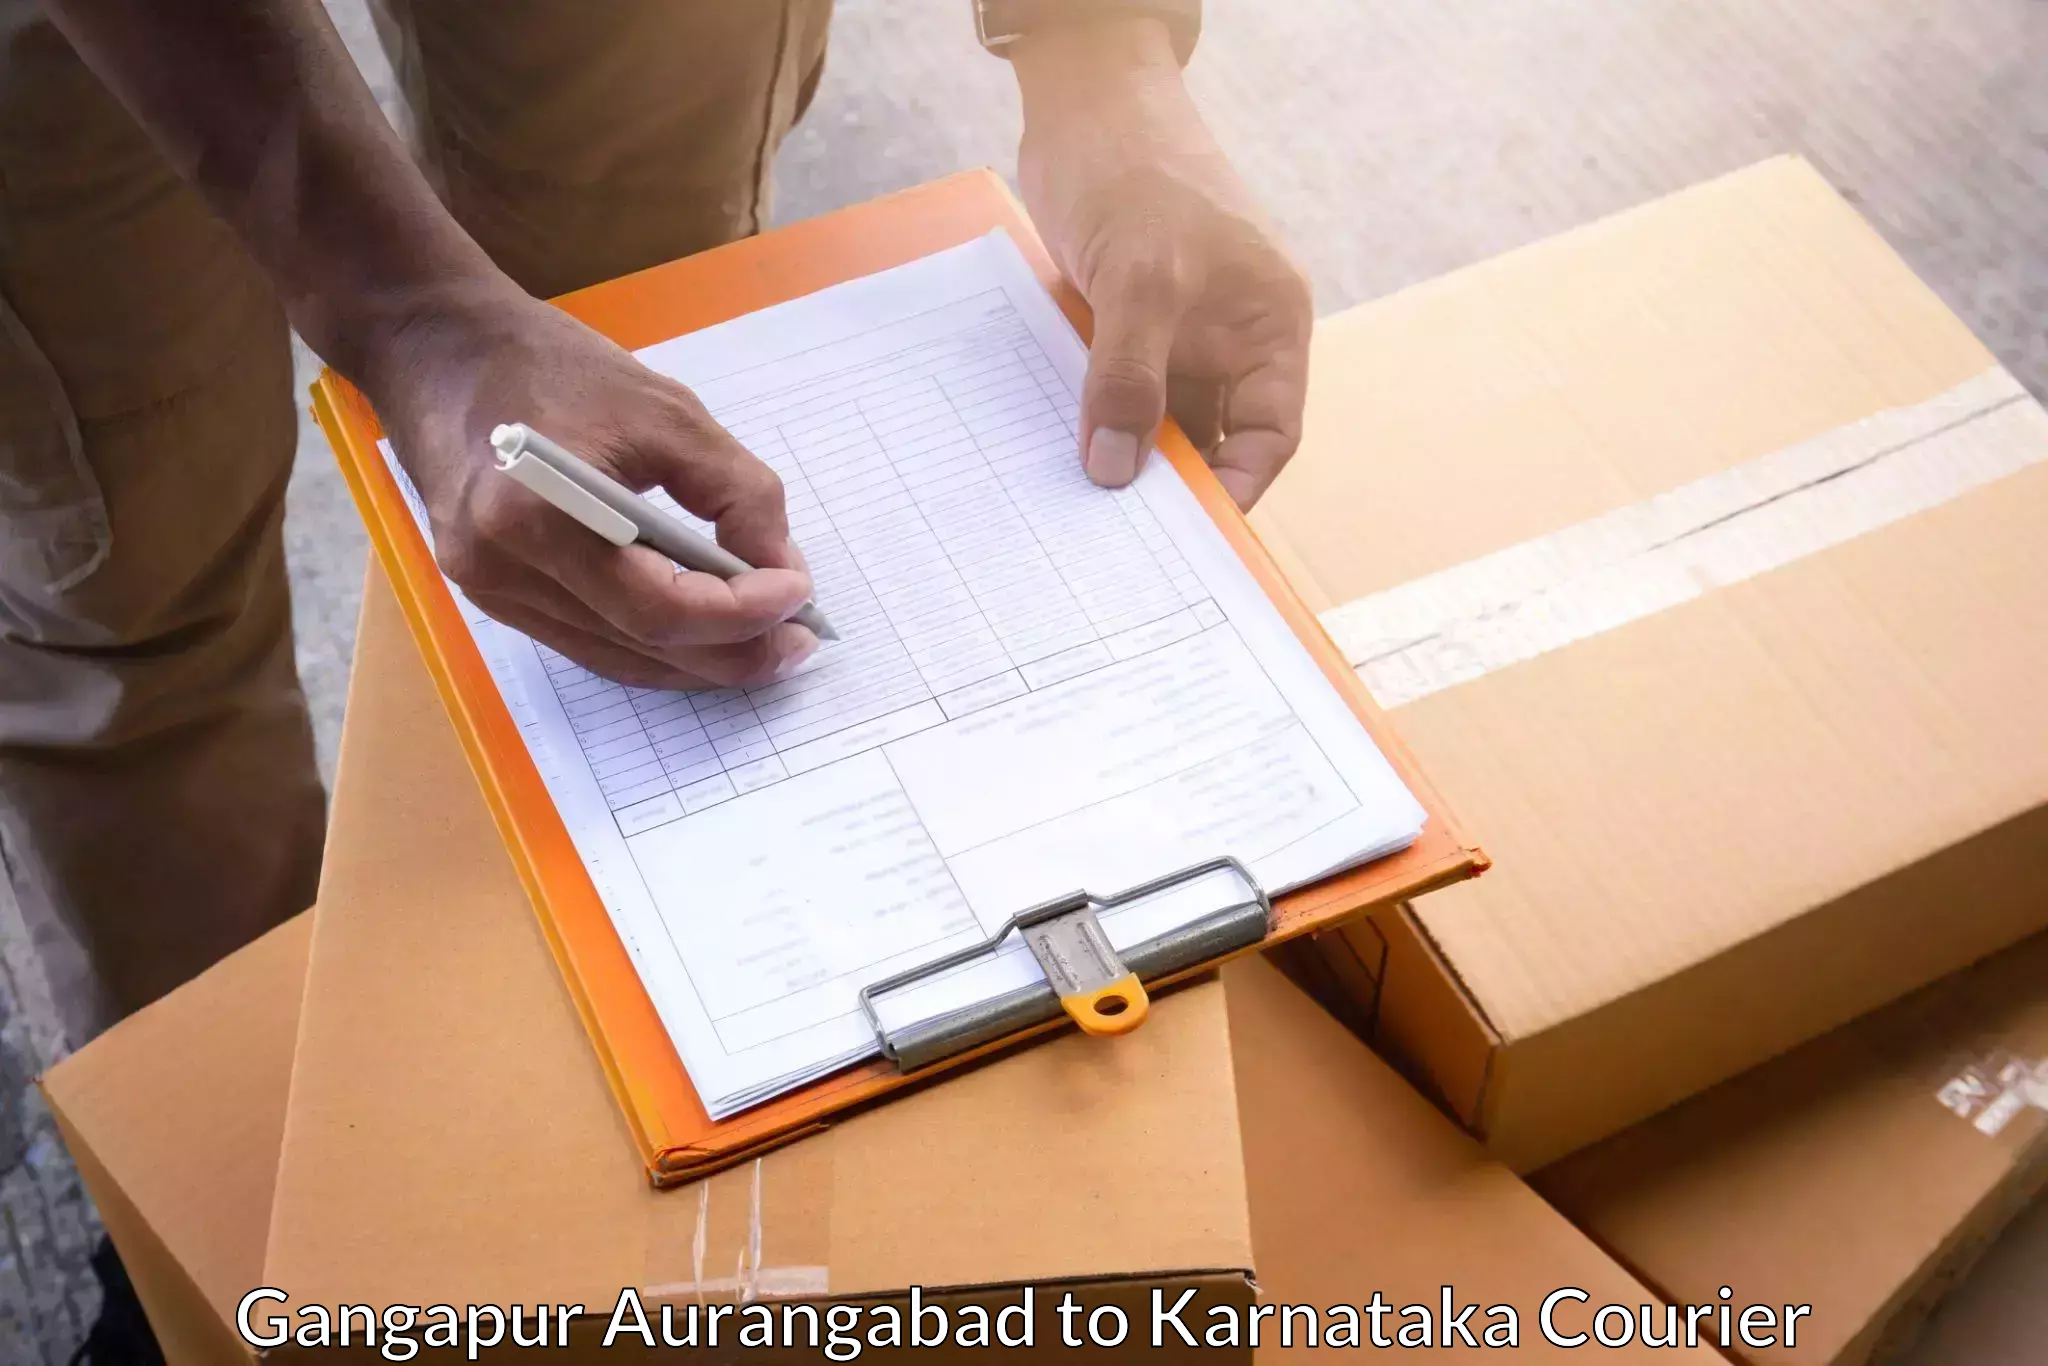 Professional delivery solutions Gangapur Aurangabad to Hoovina Hadagali